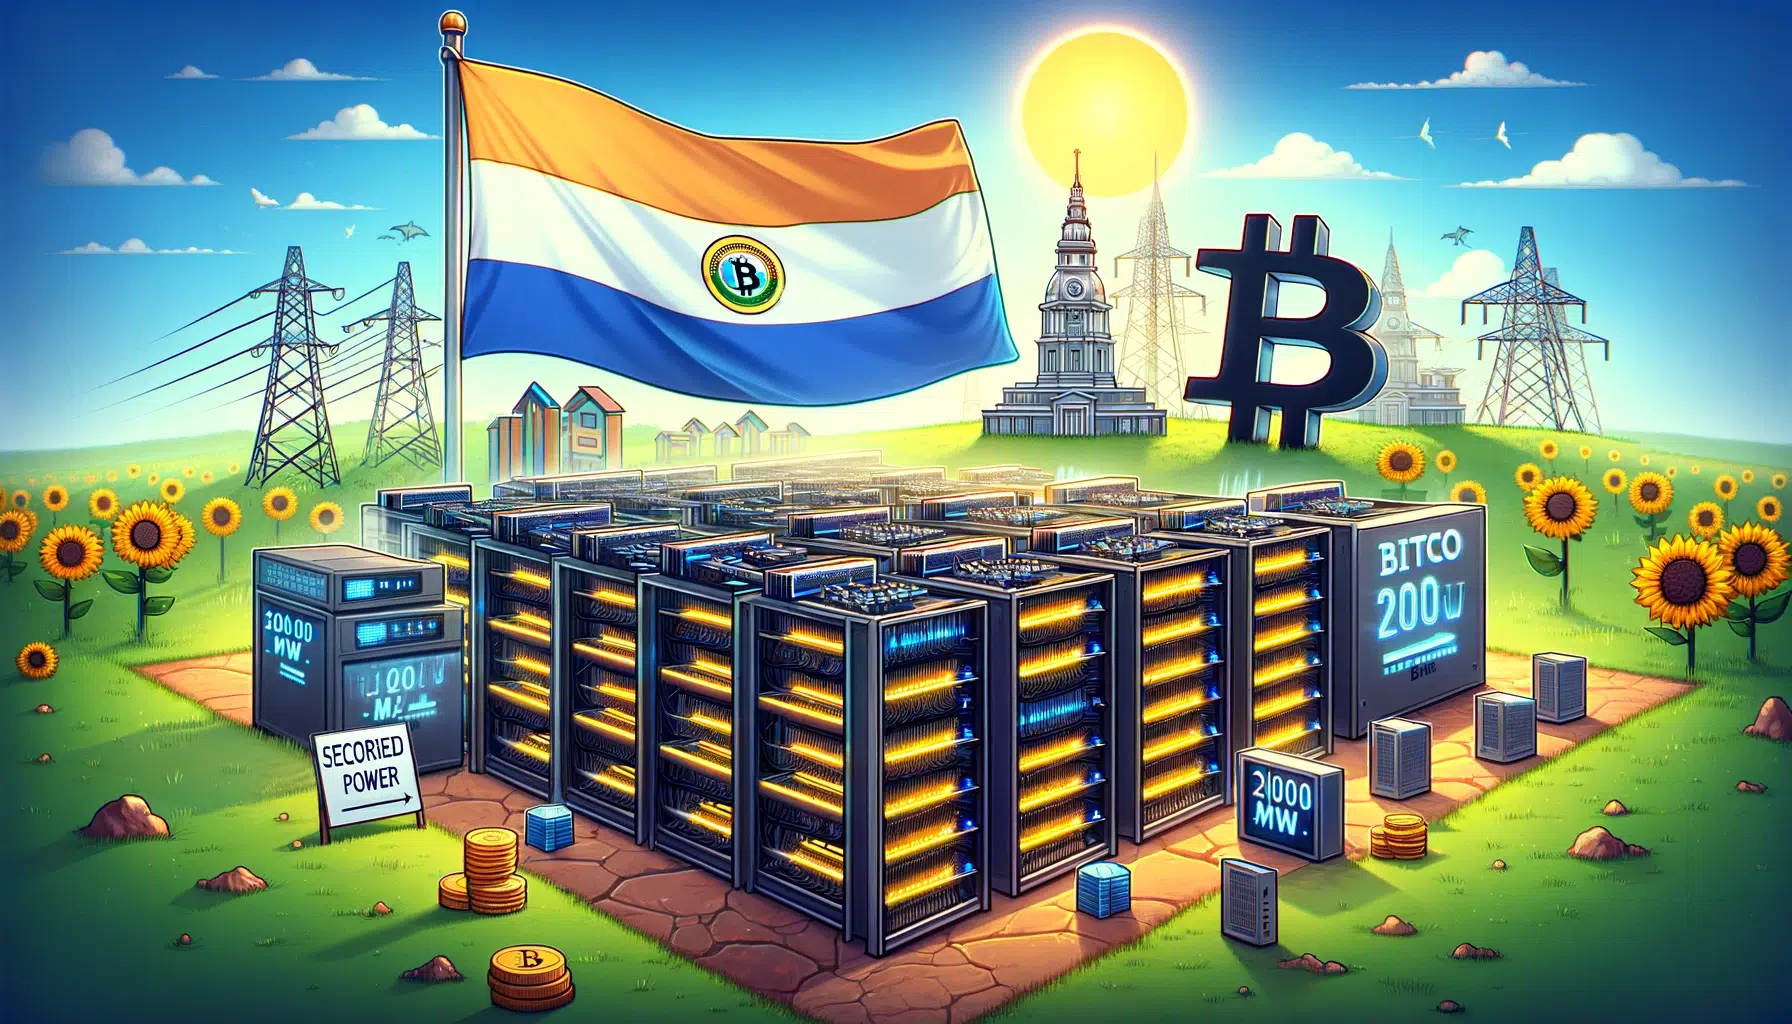 bitfarms-se-expande-en-paraguay-en-medio-de-incertidumbre-regulatoria-garantiza-200-mw-para-la-minería-de-bitcoins